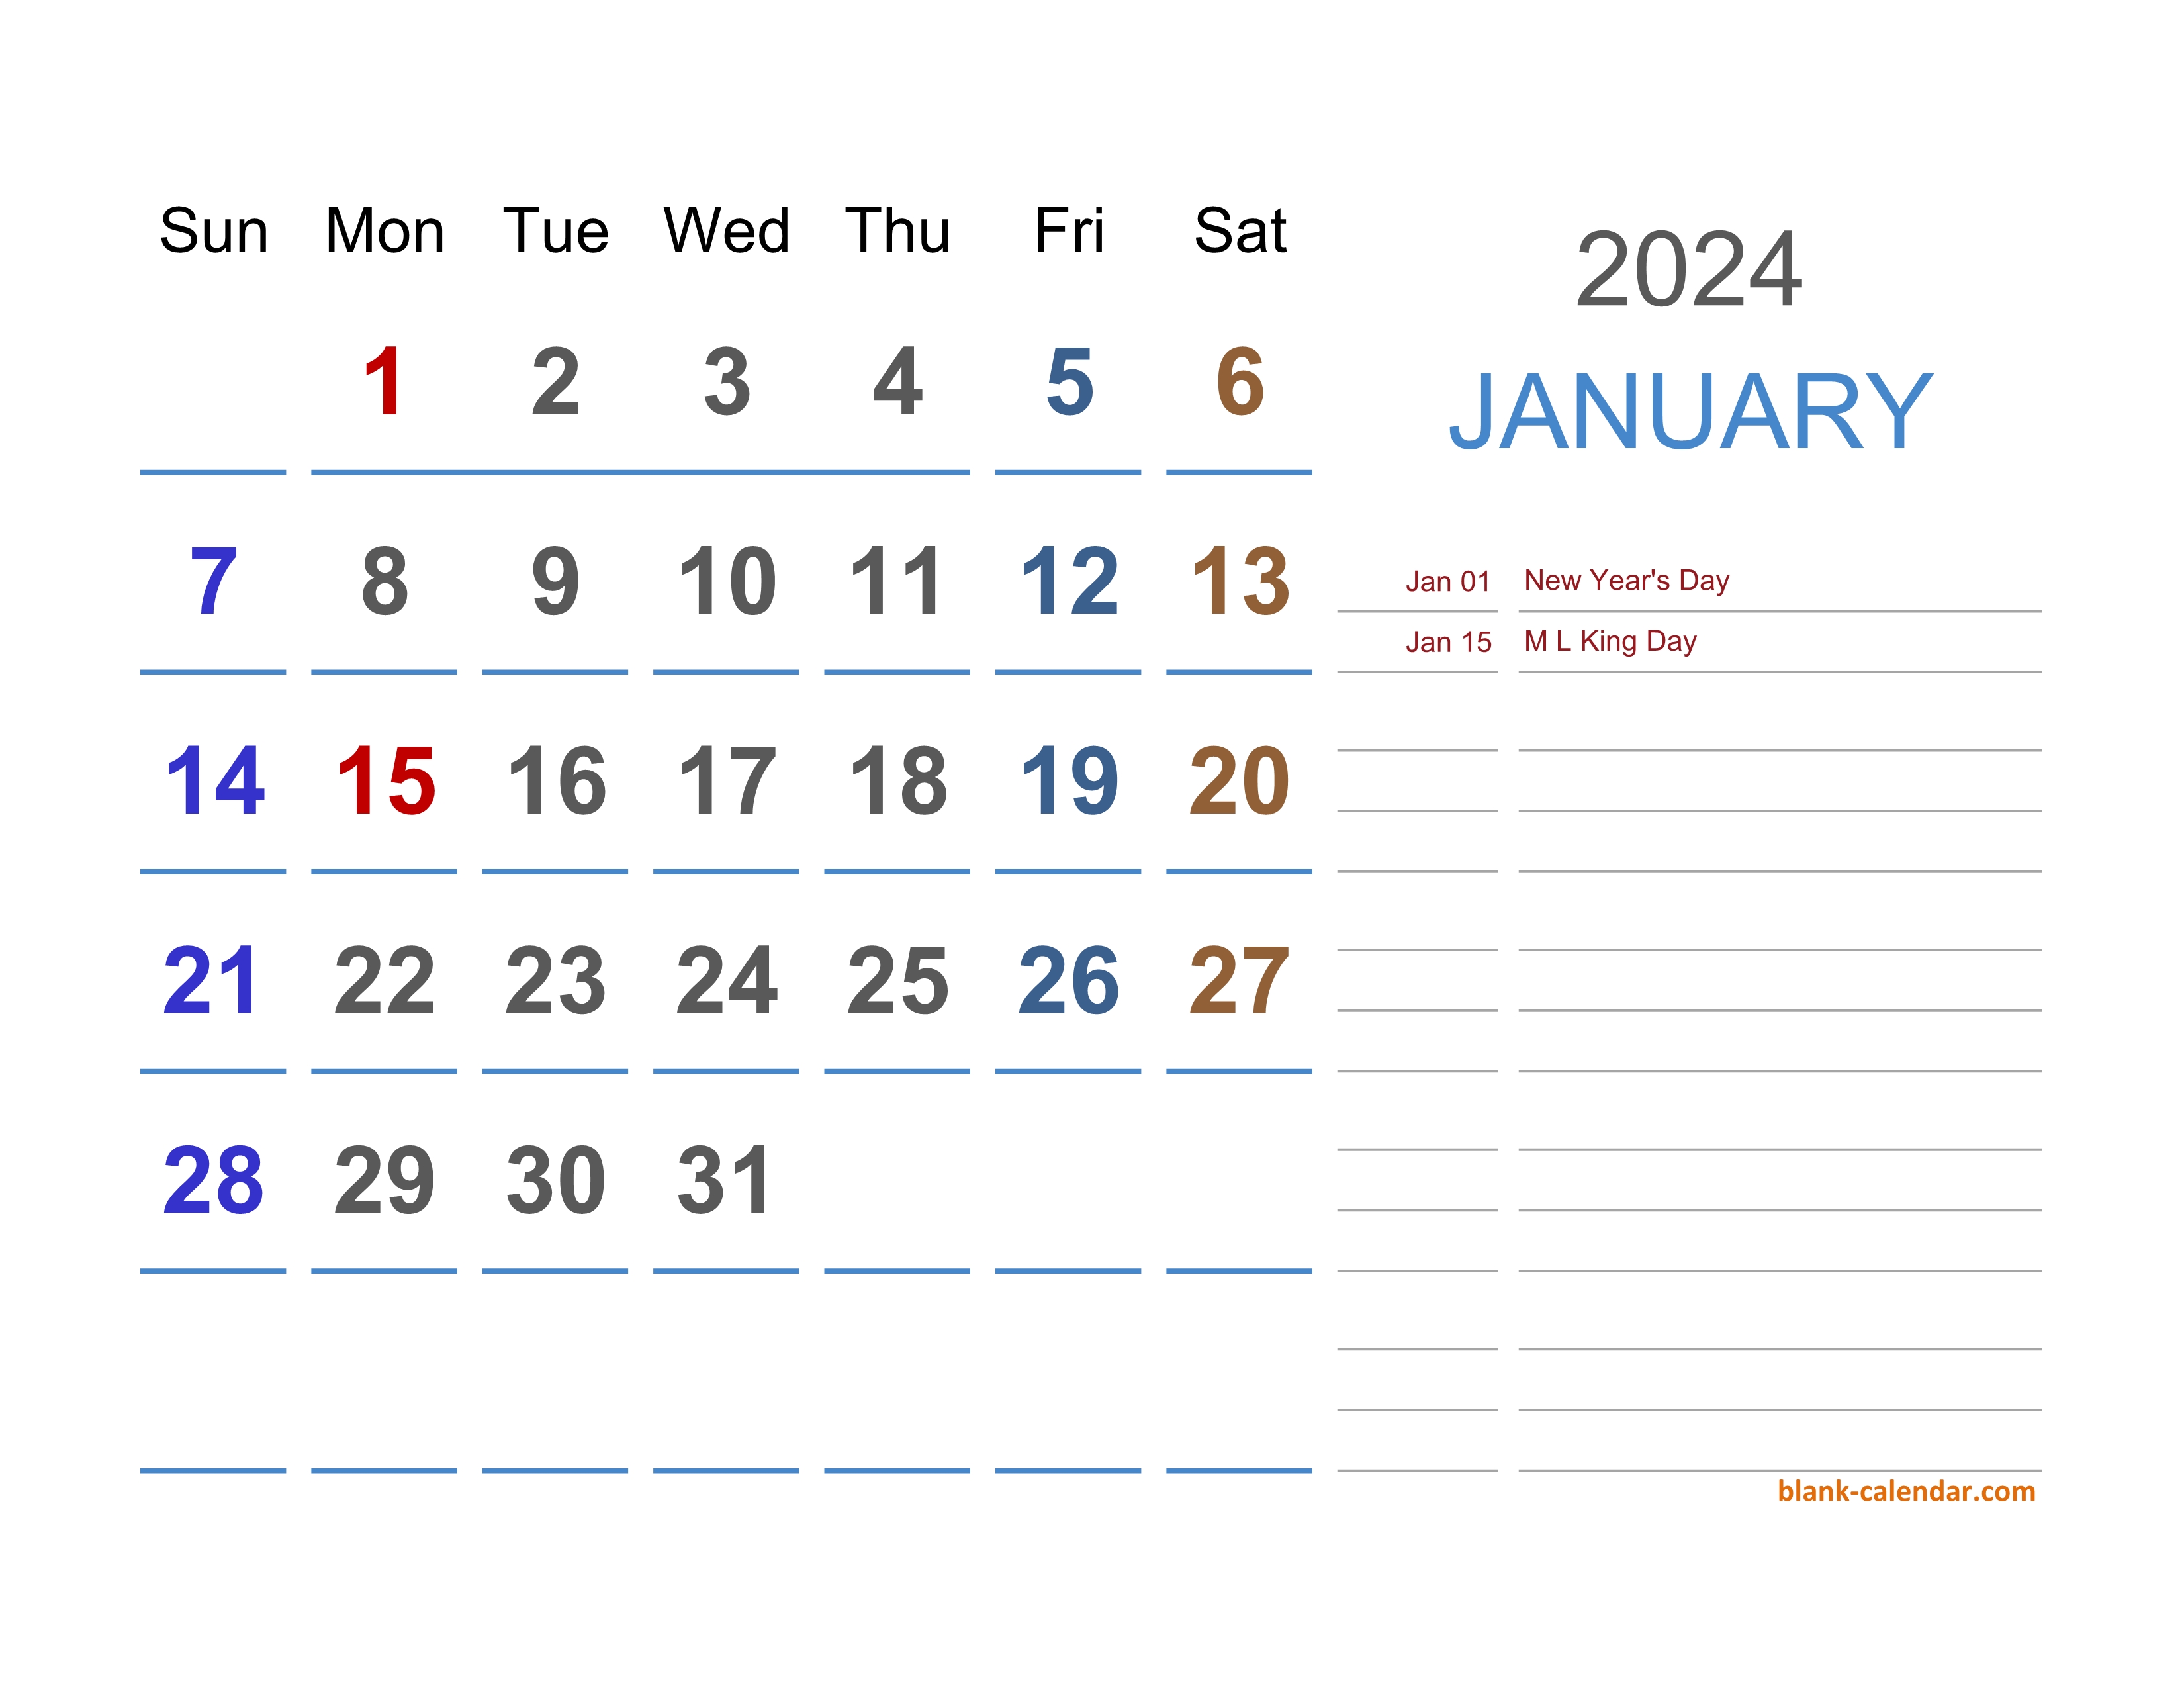 Календарь на 2024 год. Календарь календарь 2024. Календарь 2024 эксель. Календарь март 2024.